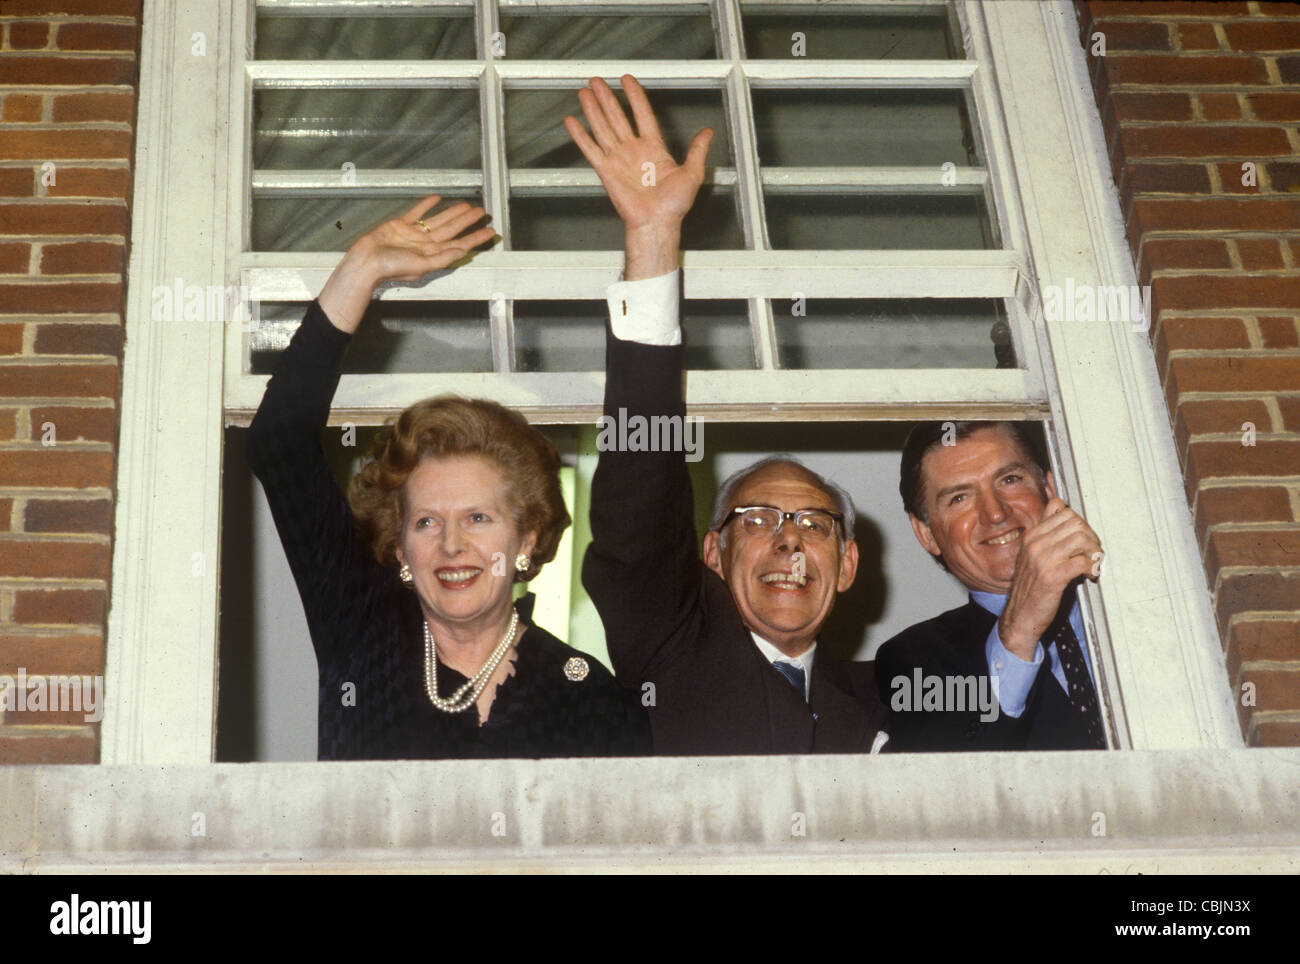 Madame Maggie Margaret Thatcher, Denis Thatcher, Cecil Parkinson im Conservative Central Office 32 Smith Square (CCO), heute CCHQ (Conservative Campaign Headquarters) genannt, feiert nach dem Sieg bei den Parlamentswahlen 1983. London Großbritannien. England der 1980er Jahre. HOMER SYKES Stockfoto